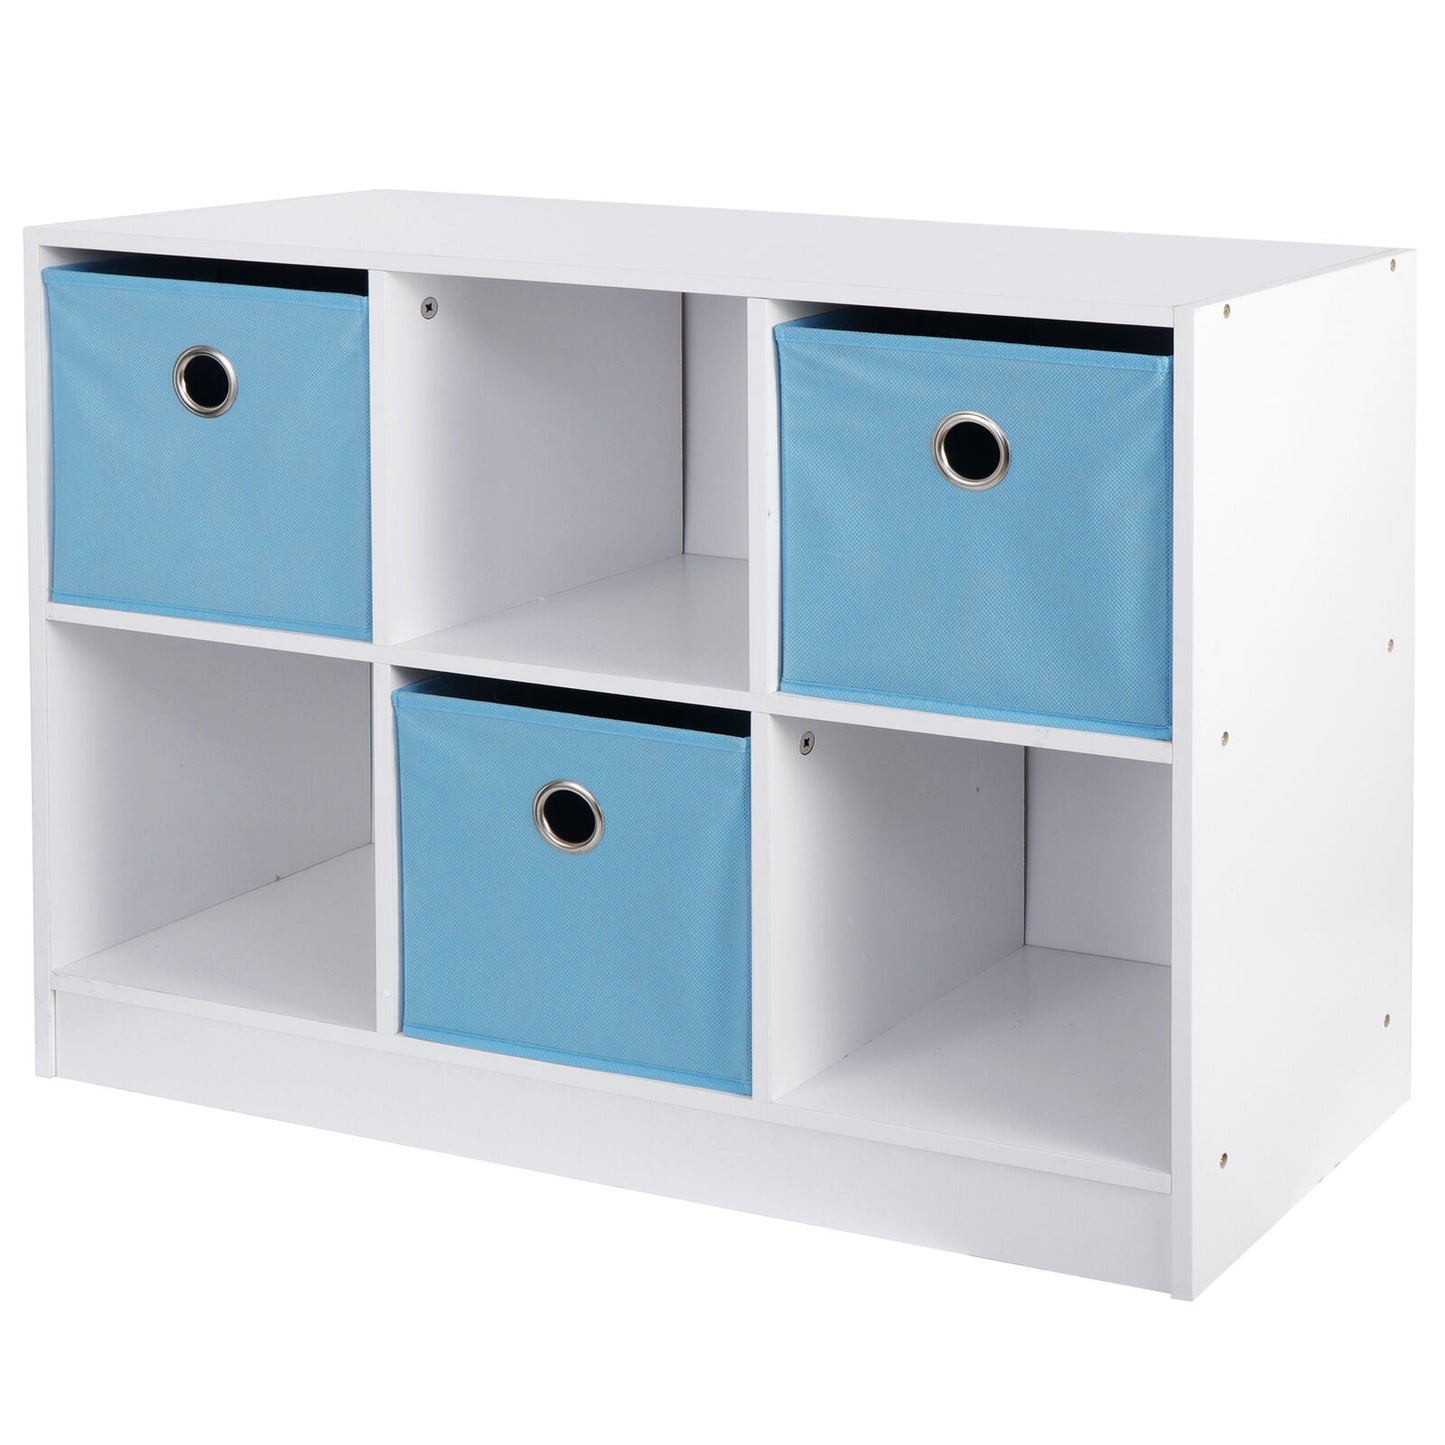 6 Cube Modern Storage Organizer Bookcase Storage White Light Blue Furniture